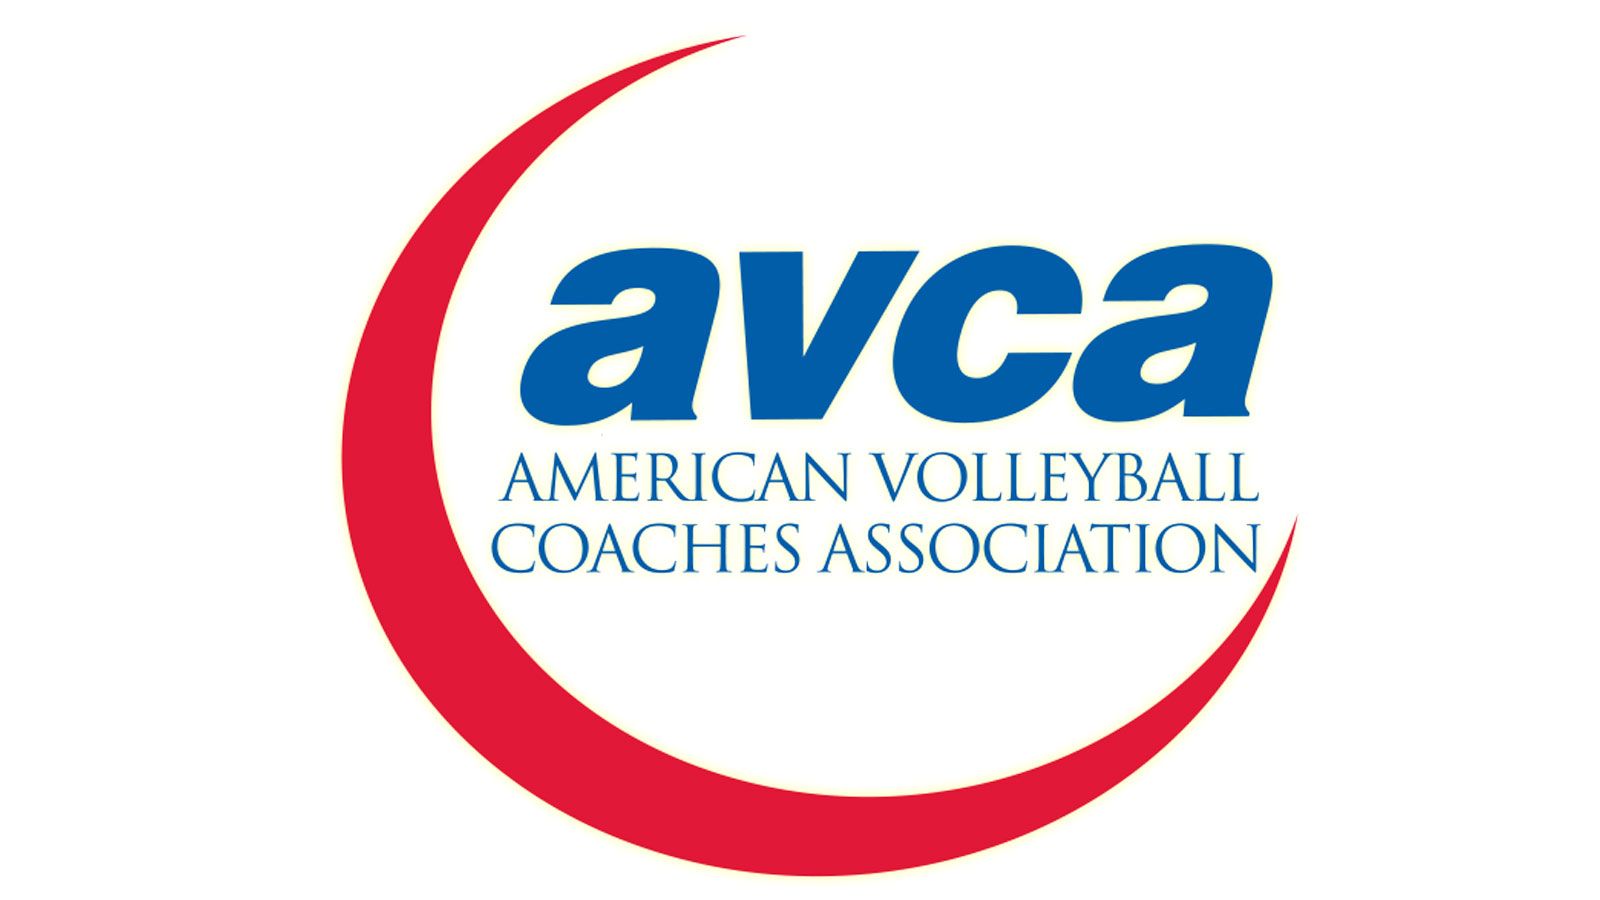 SEC teams earn AVCA Team Academic Award